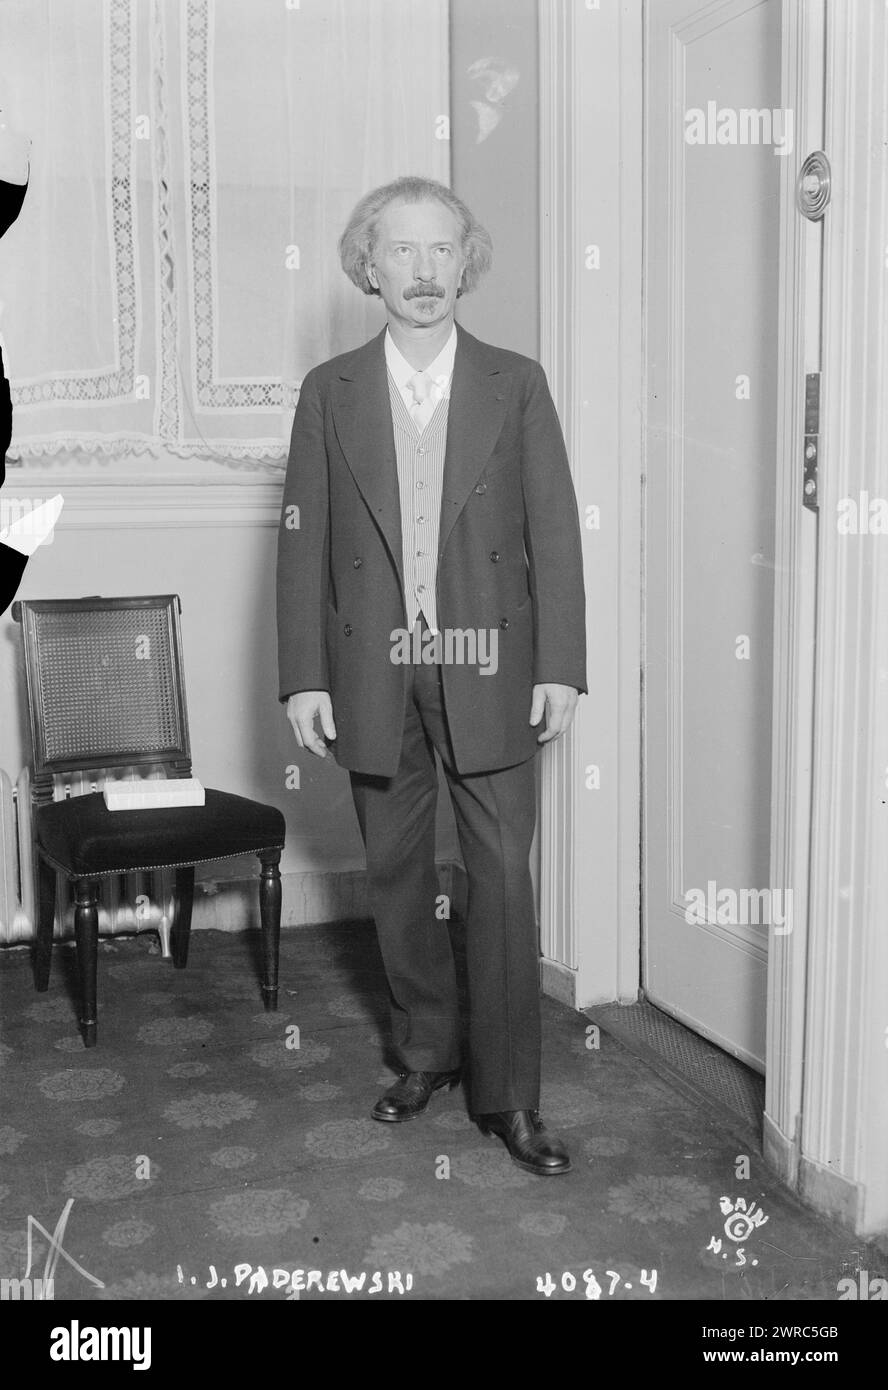 I.J. Paderewski, photographie montrant le pianiste et compositeur polonais Ignacy Jan Paderewski (1860-1941)., entre env. 1915 et env. 1920, négatifs en verre, 1 négatif : verre Banque D'Images